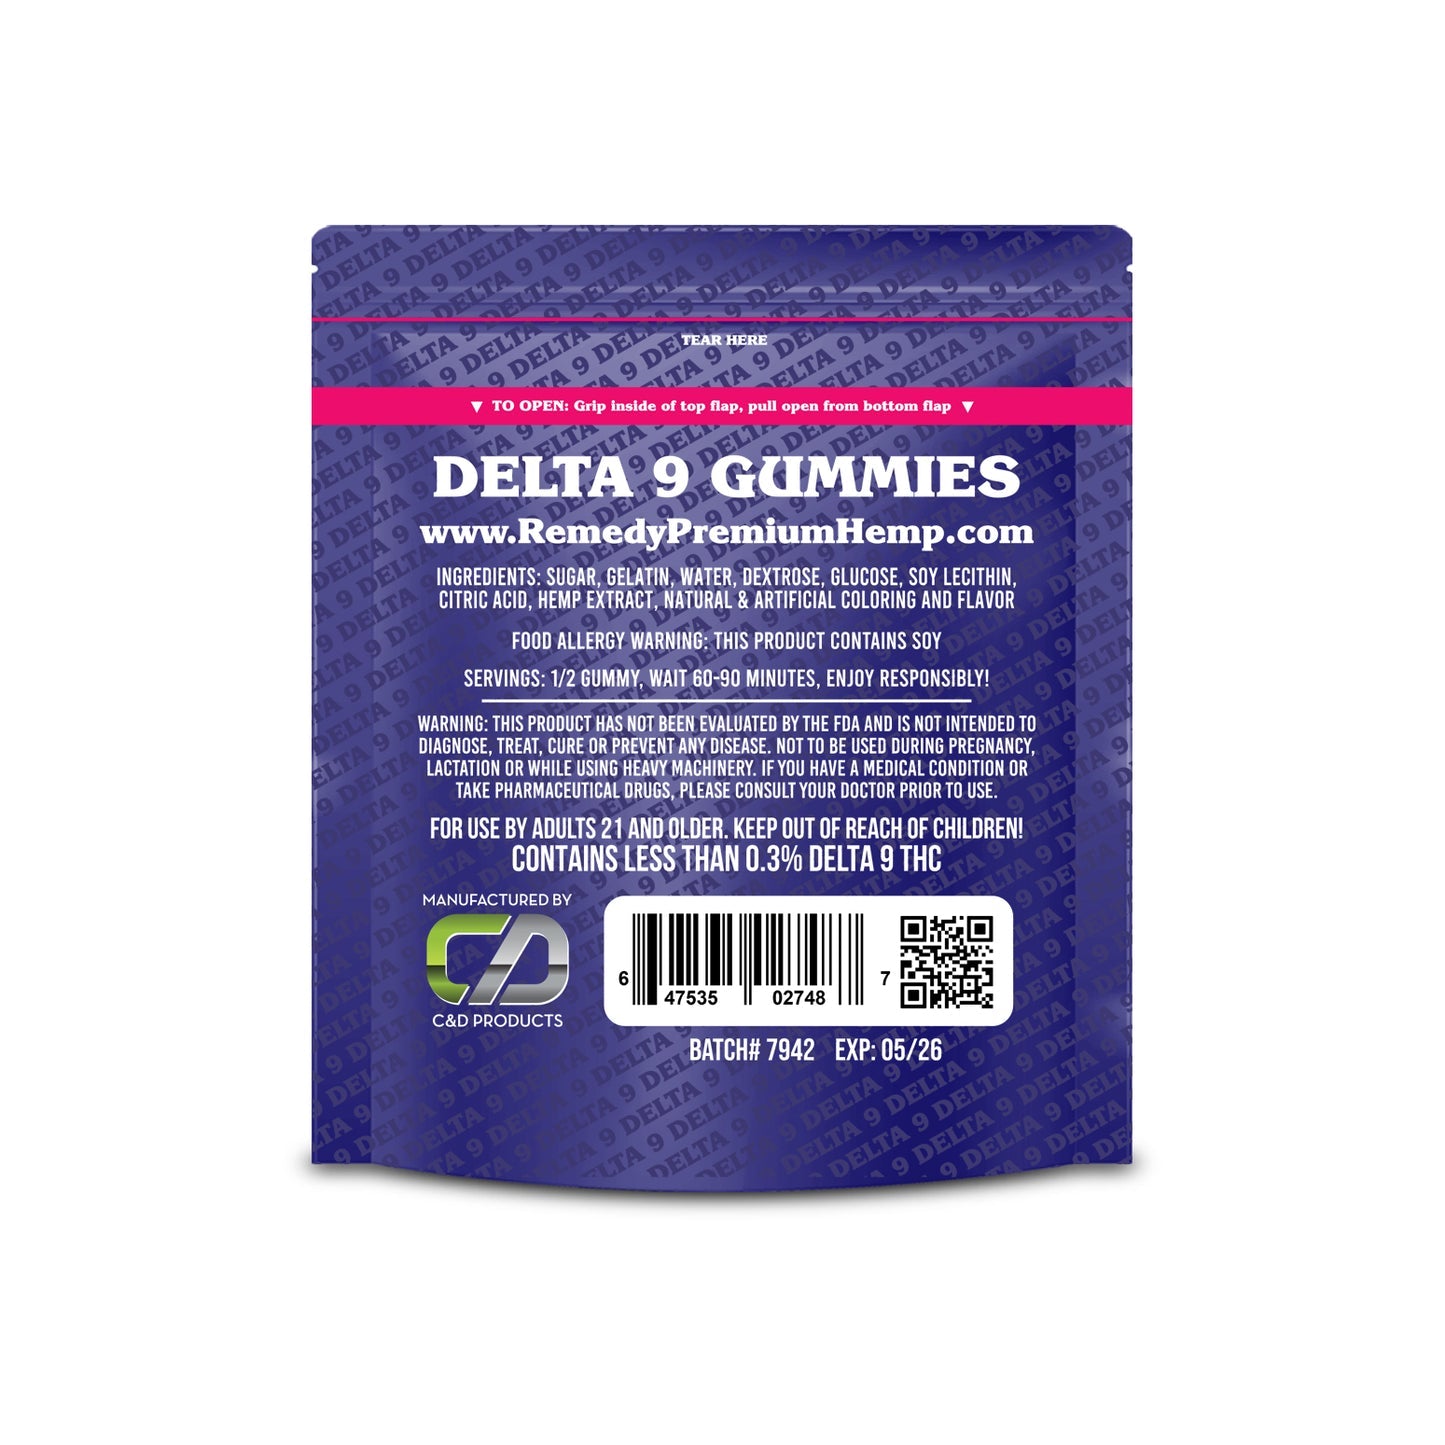 Delta 8 2000mg & Delta 9 200mg Gummy Bundle 50% OFF